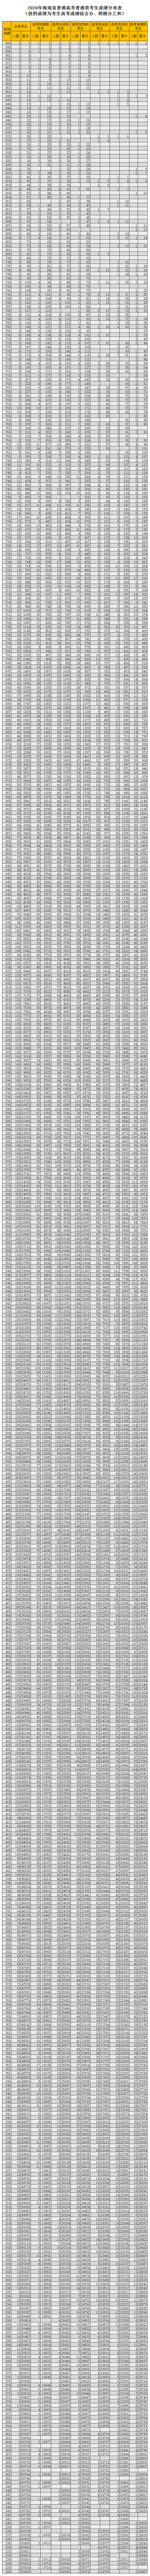 2020年海南省普通高考普通类考生成绩分布表